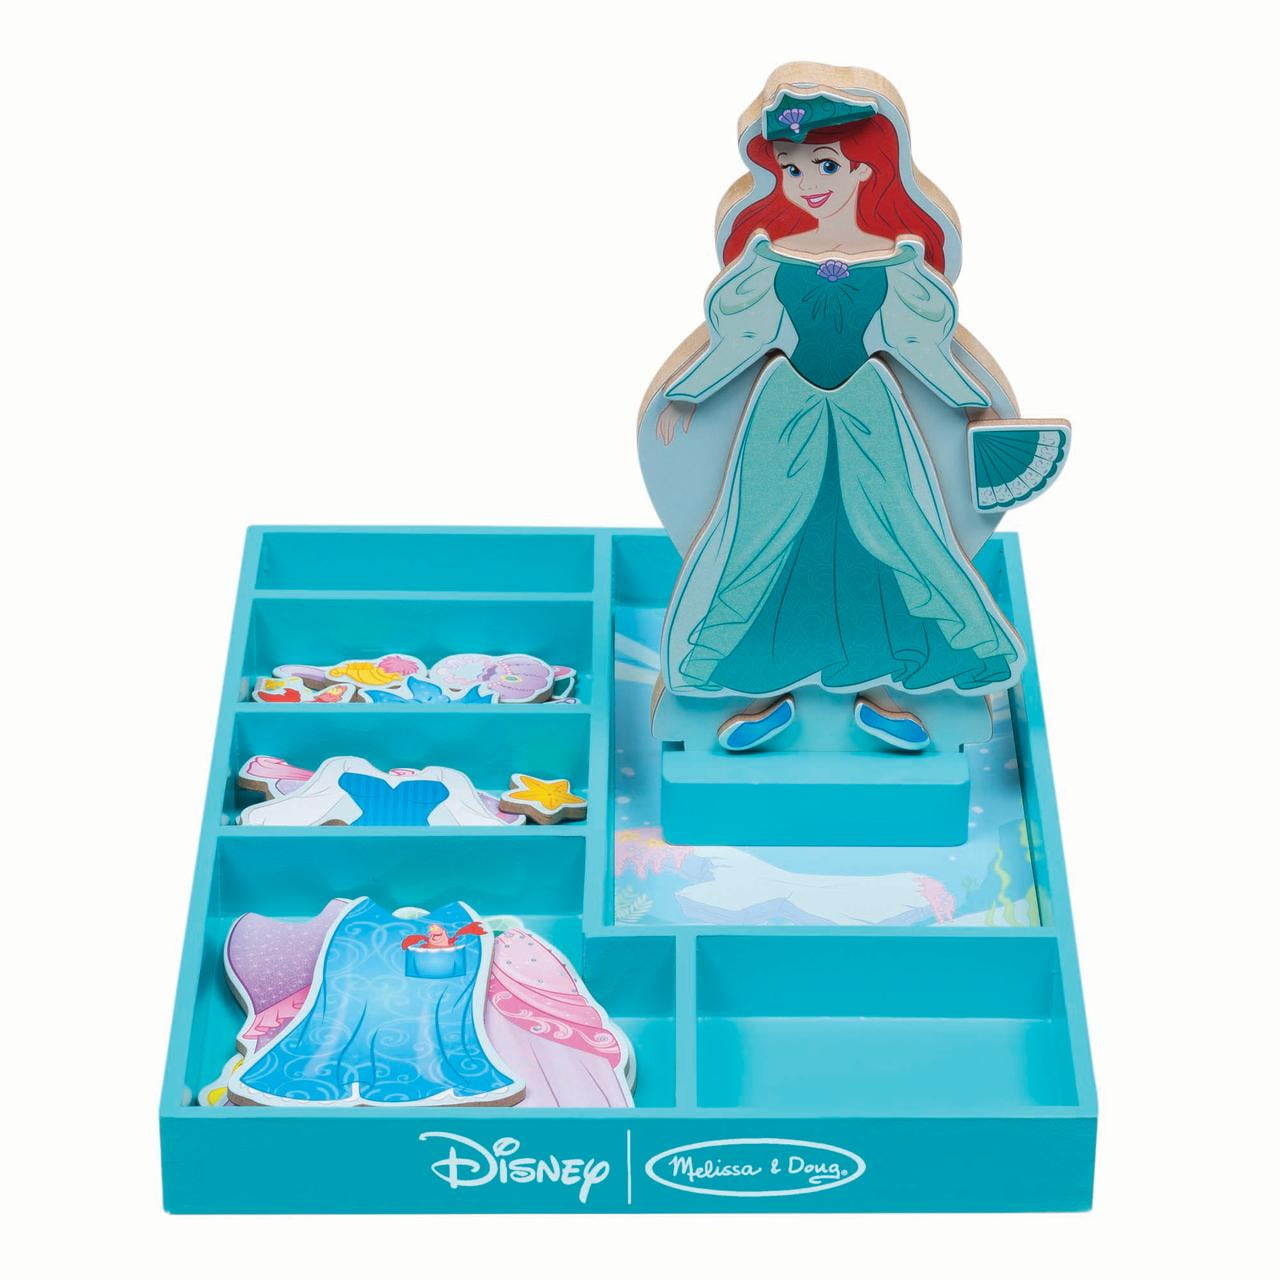 DISNEY PRINCESS MAGNET Little Mermaid Beauty Beast Snow White Frozen Ariel Belle 